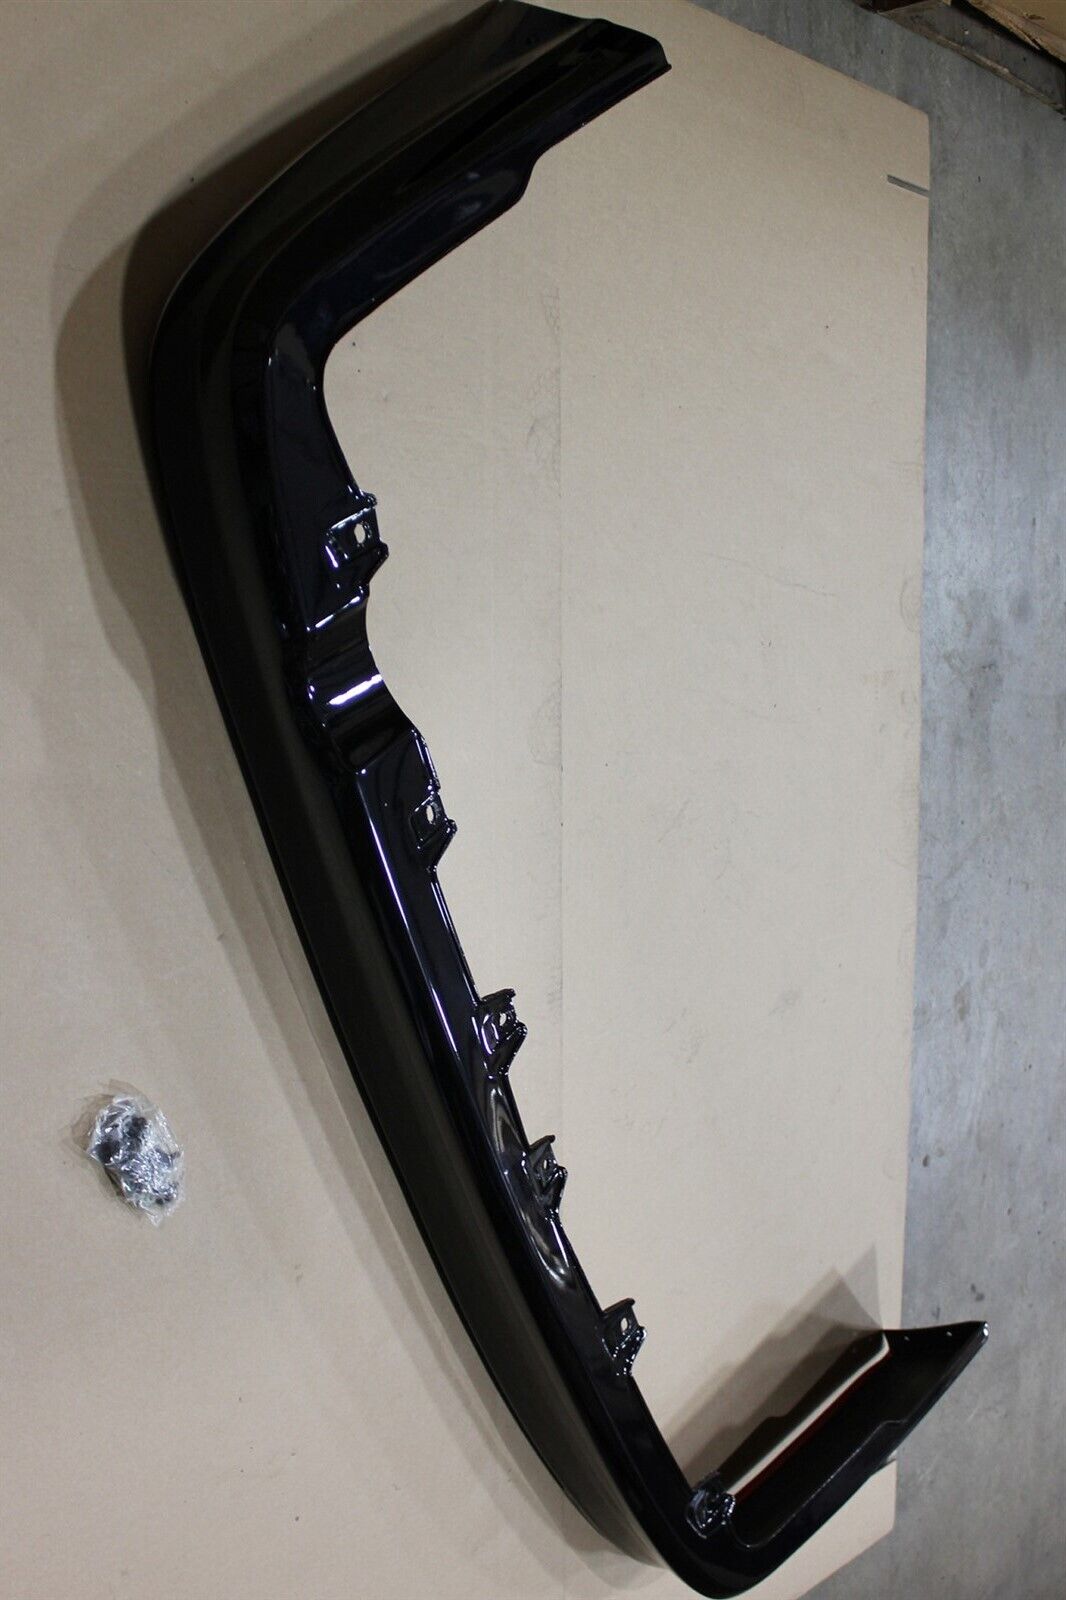 OEM Factory 01-02 Civic COUPE Black Pearl Rear Lip Spoiler Bumper Trim Aero Kit